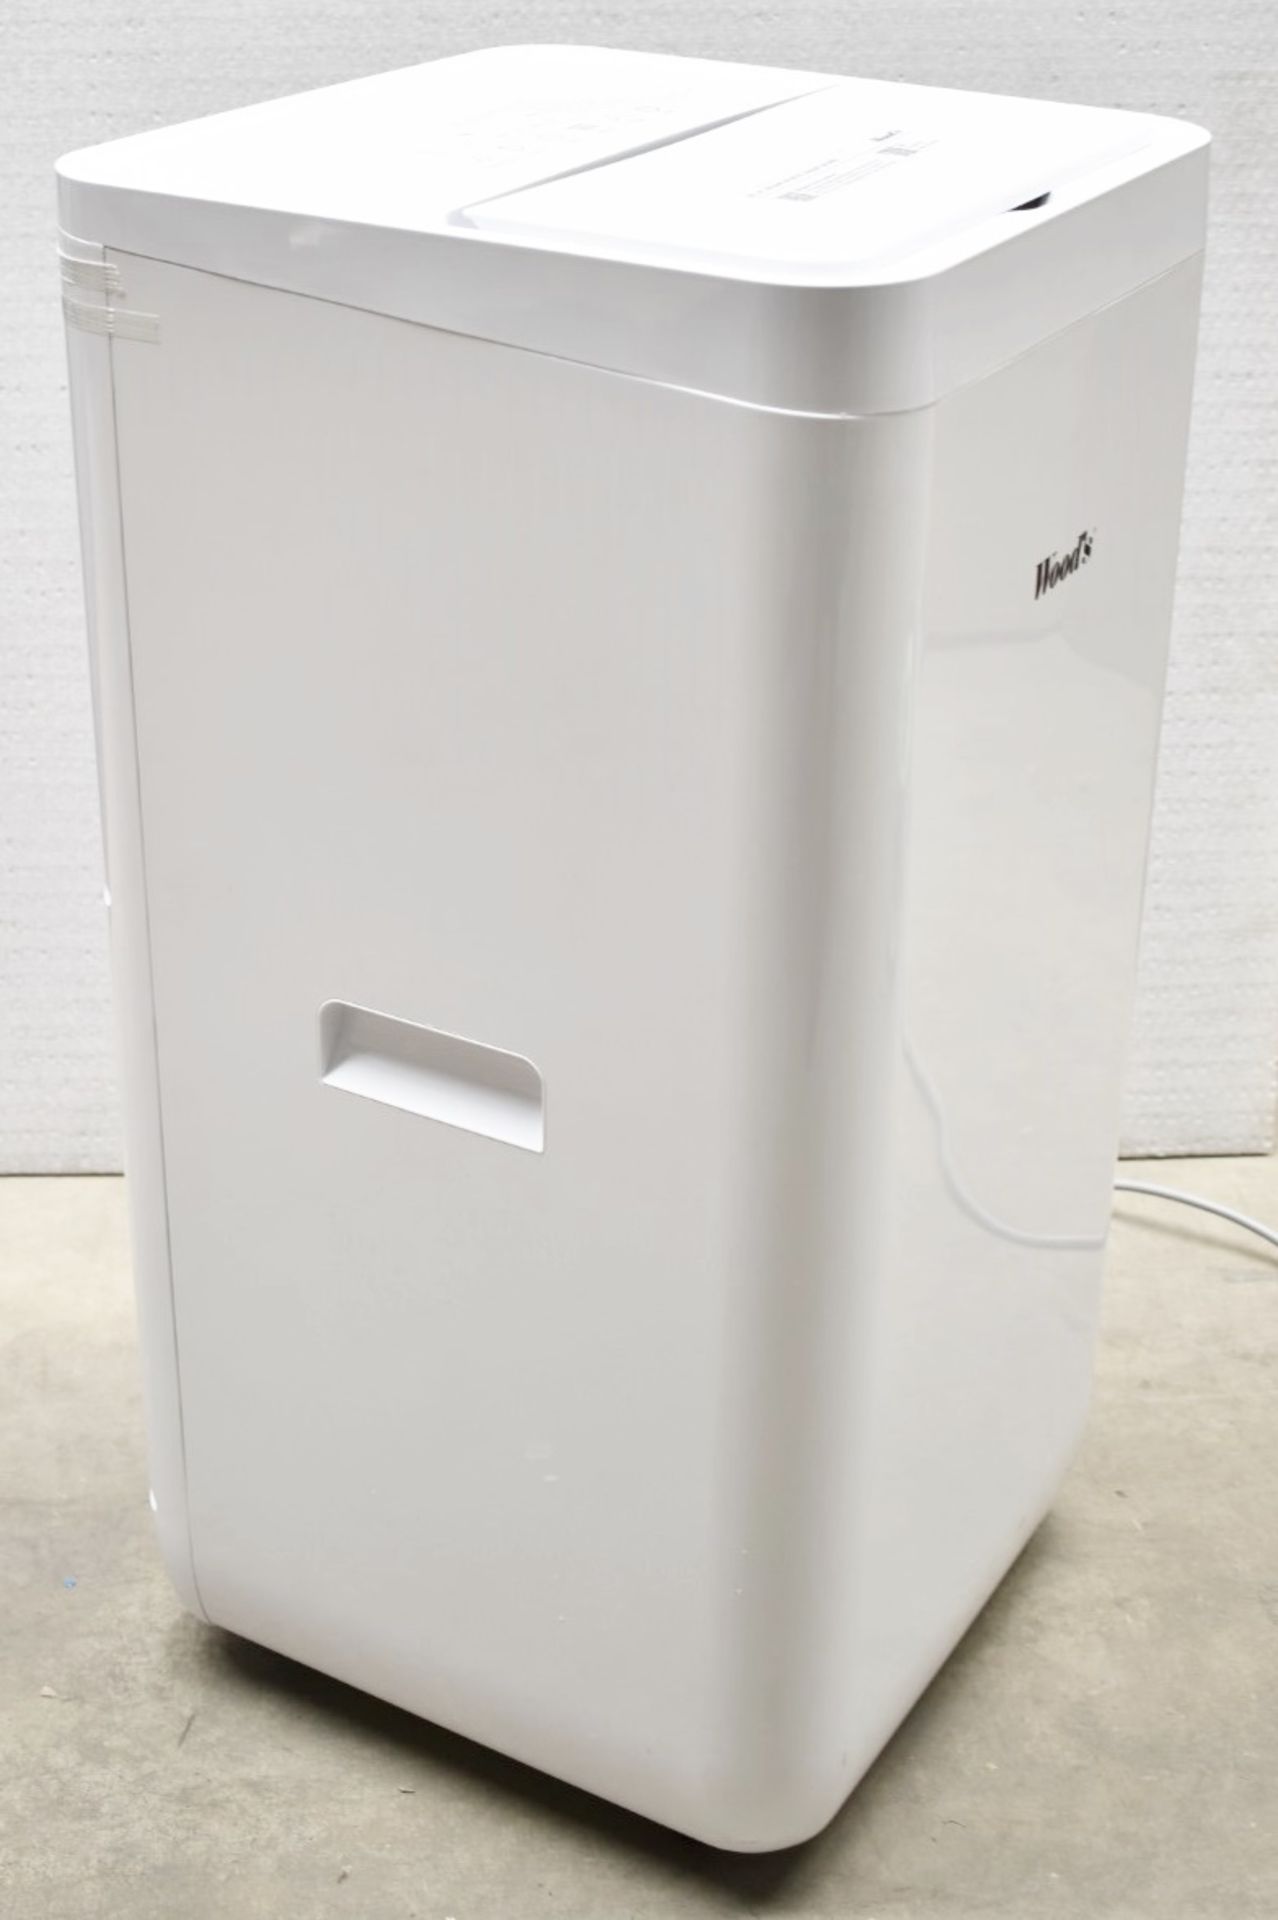 1 x WOODS Milan 9K Freestanding Air Conditioner Unit - Original RRP £449.00 - Unused Boxed - Image 3 of 20